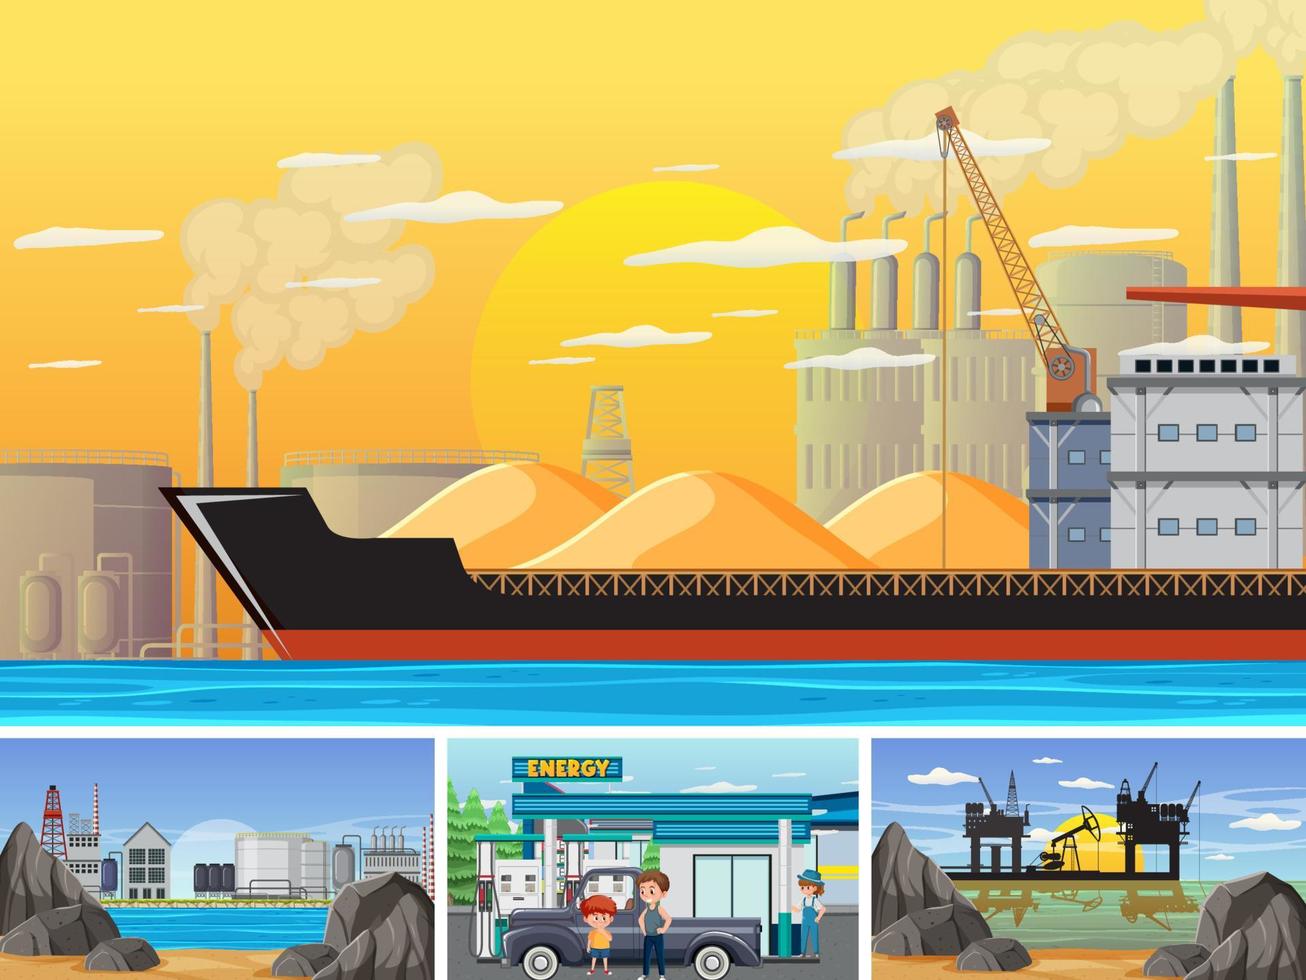 cuatro escenas diferentes de la industria petrolera vector